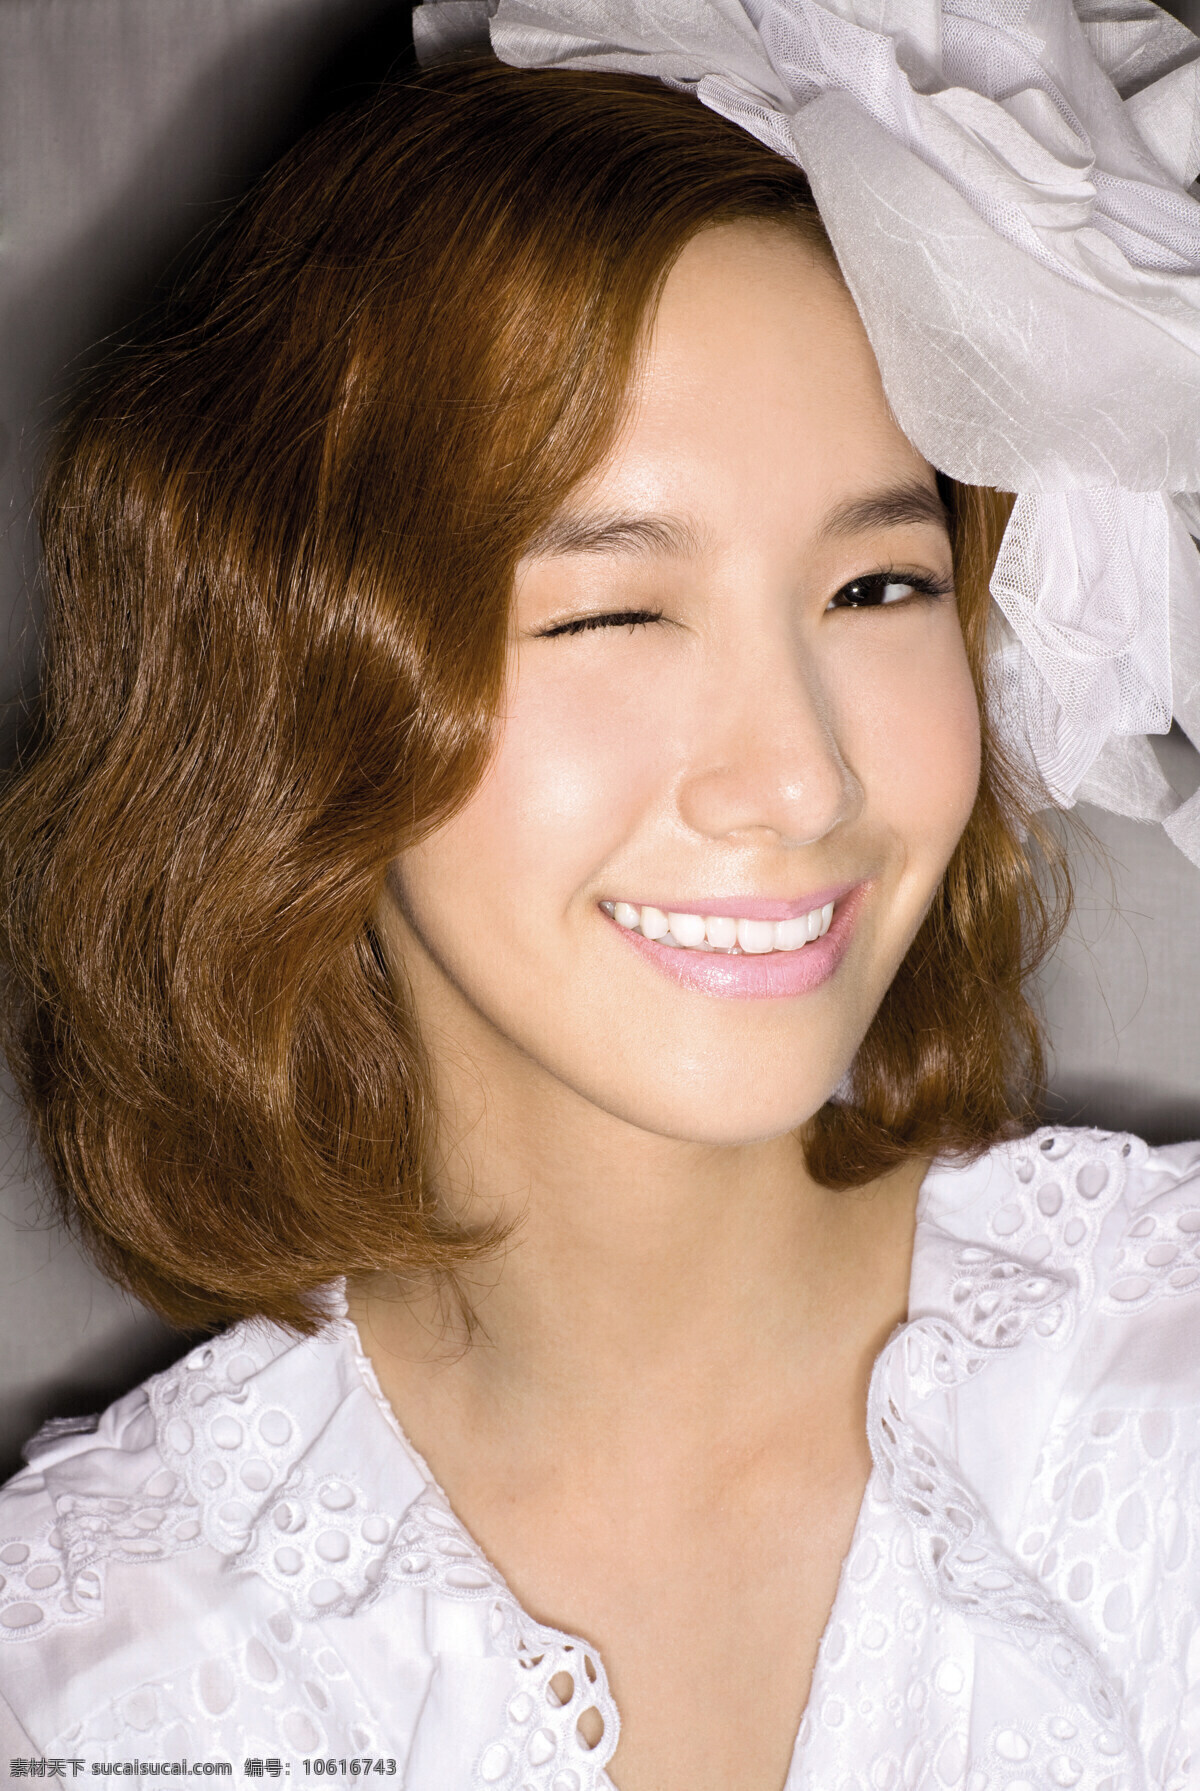 ceci拍摄 少女时代 韩国 ceci 杂志 拍摄 礼服 允儿 微笑 明星偶像 人物图库